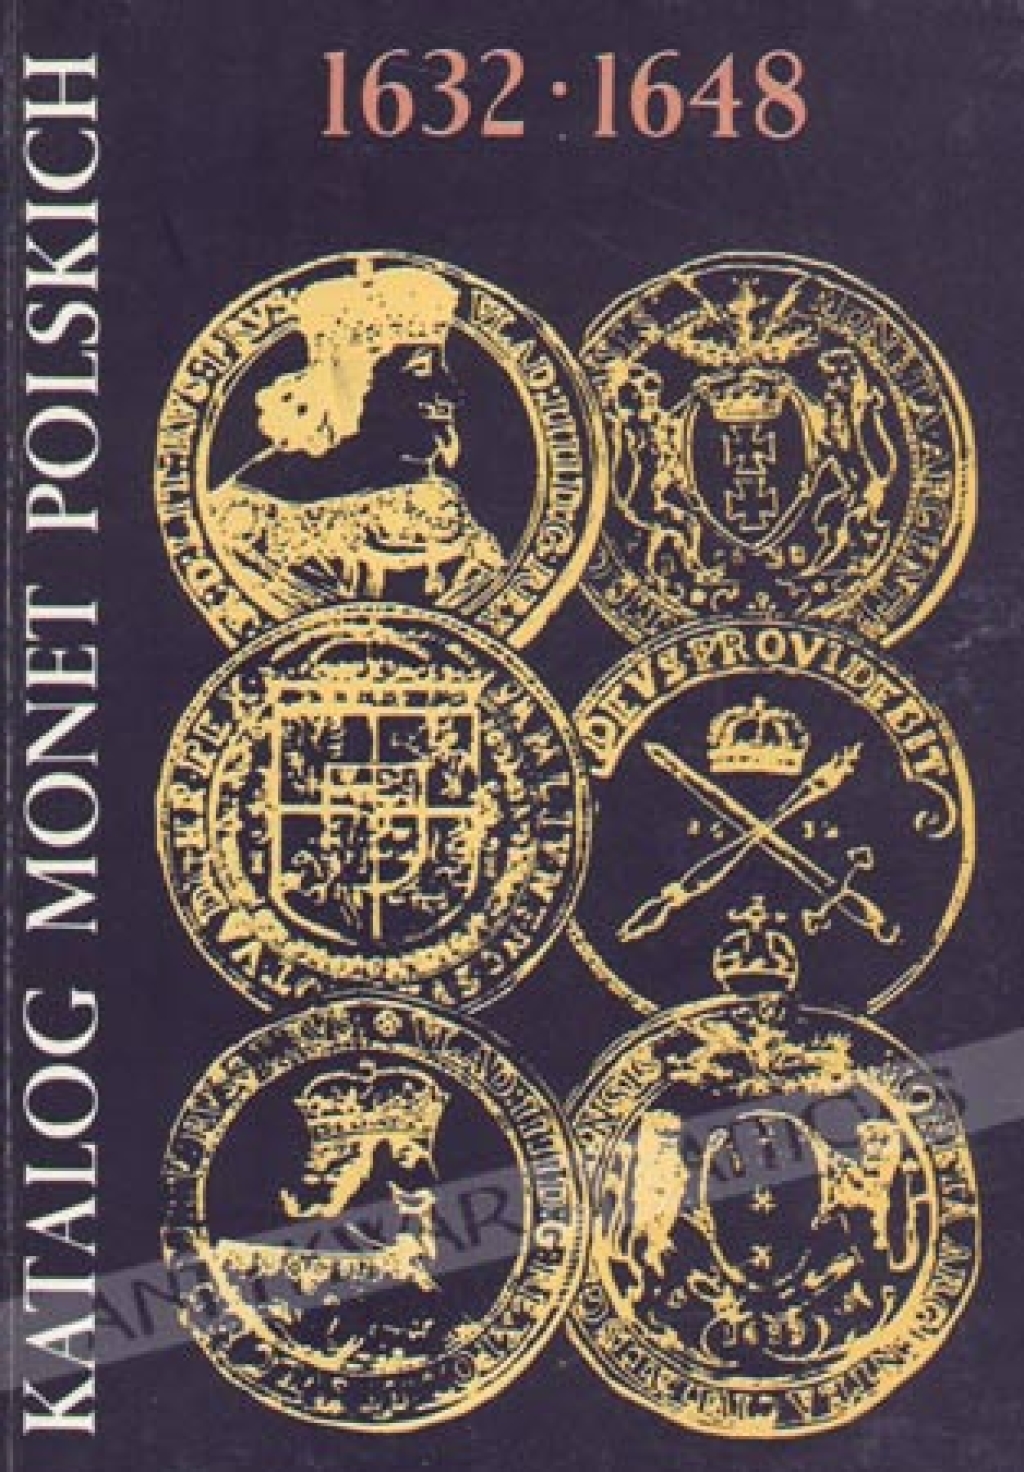 Katalog monet polskich 1632-1648 (Władysław IV)